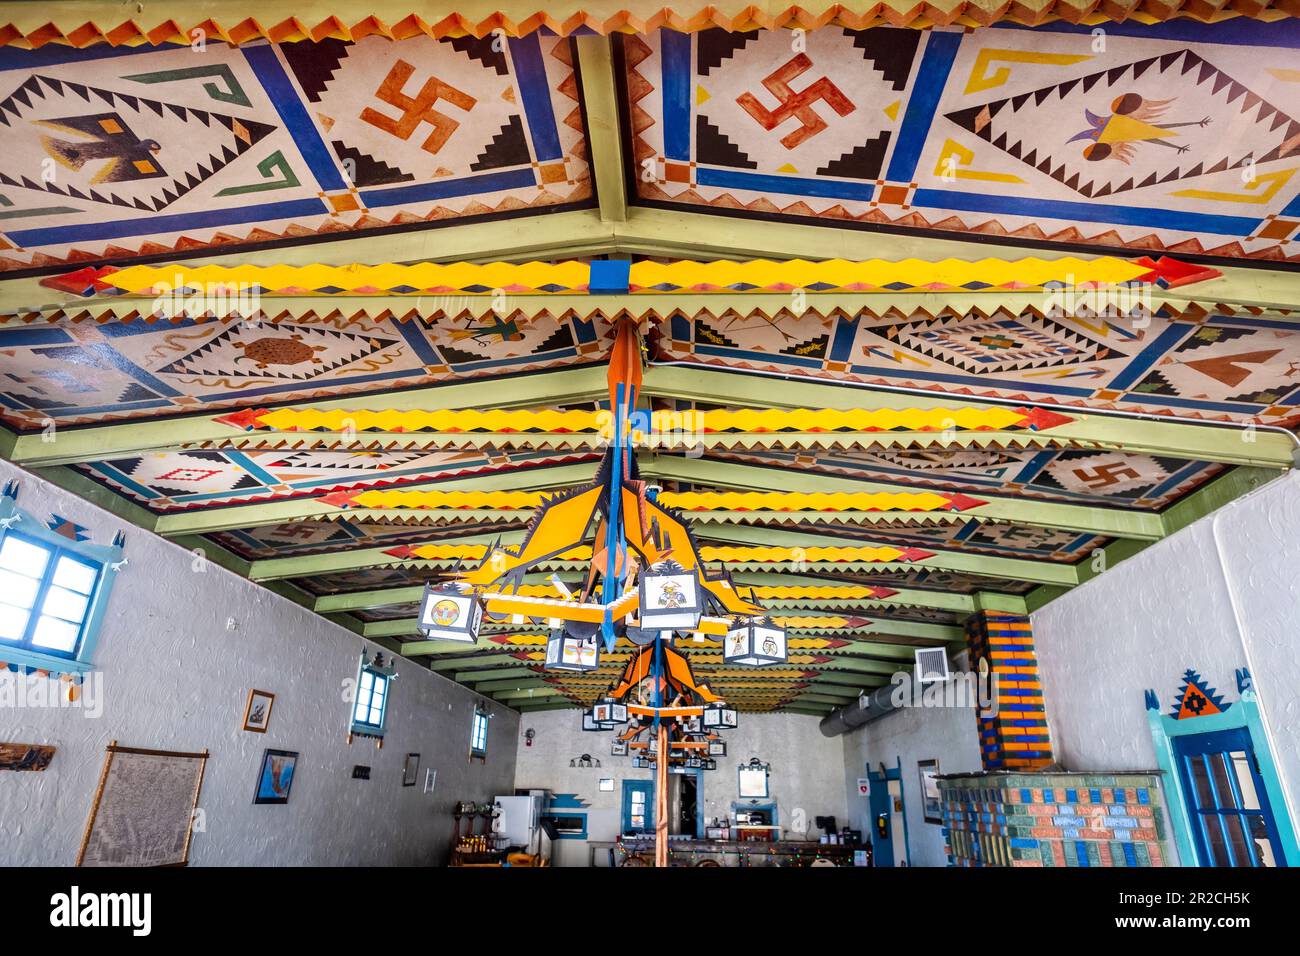 Mountainair, New Mexico - disegni colorati presso lo storico Shaffer Hotel. La svastika fu adattata dai nativi Americani come simbolo di rinascita. Foto Stock